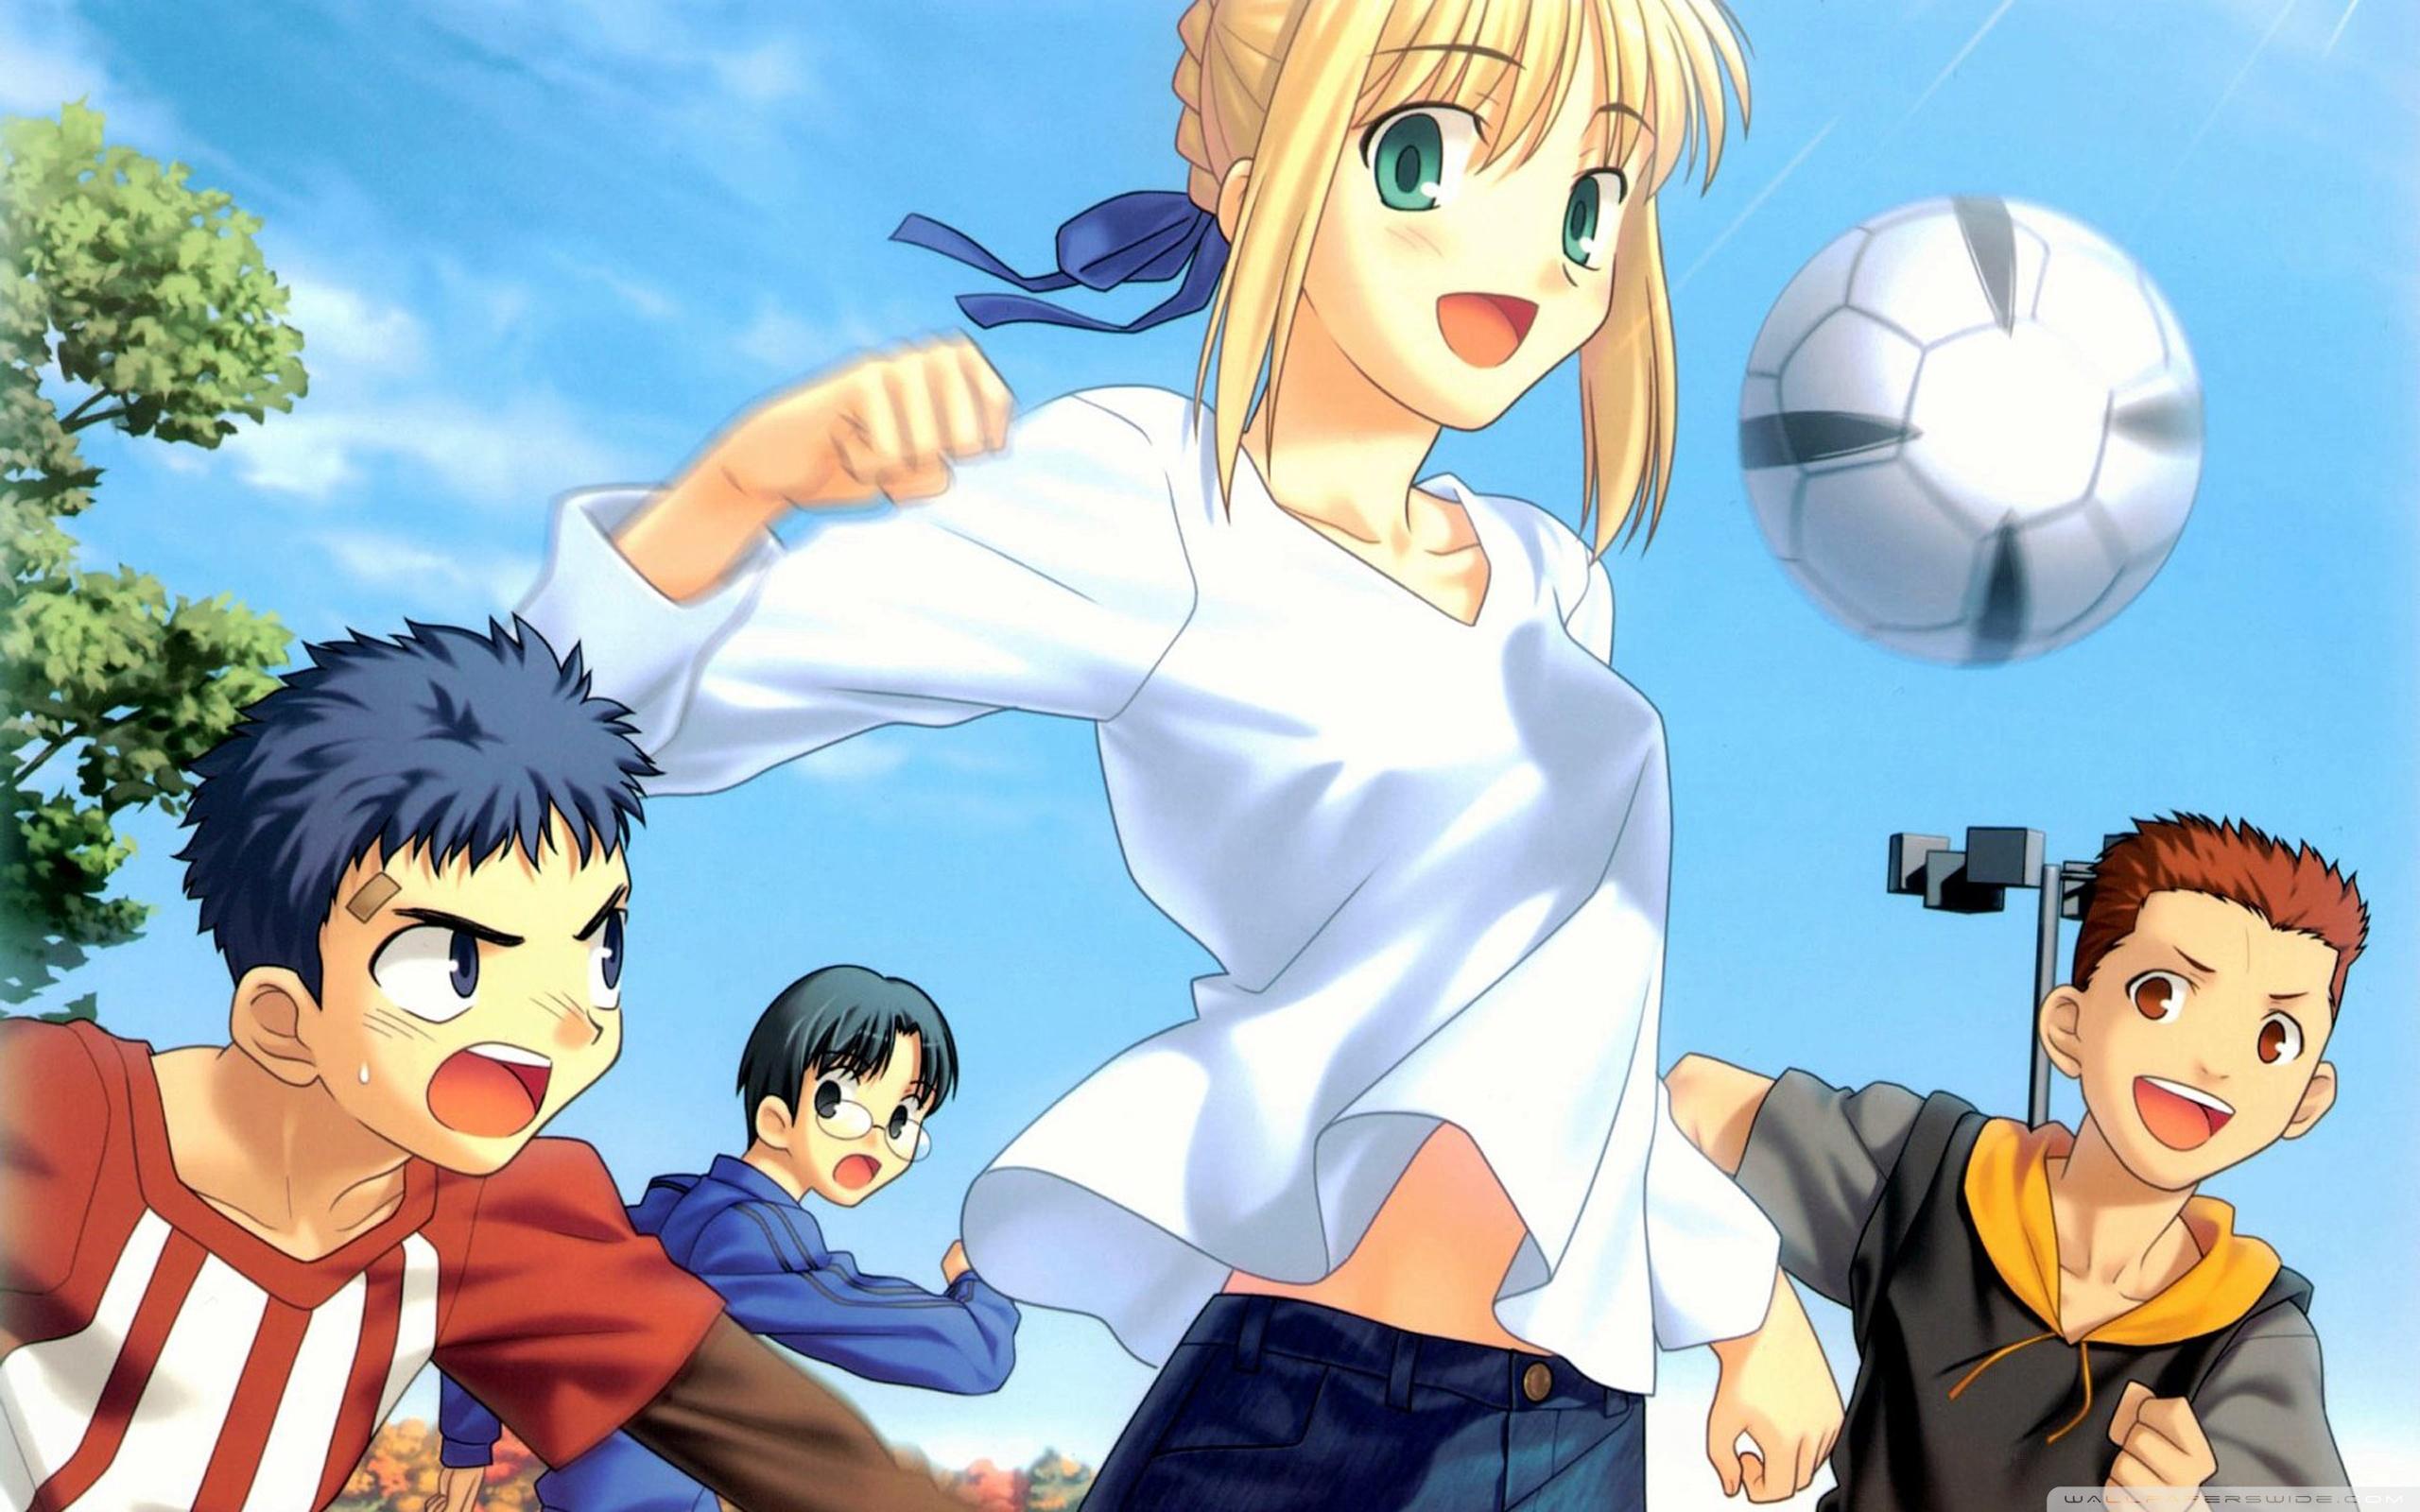 Anime Soccer Girl Ultra HD Desktop .wallpaperwide.com